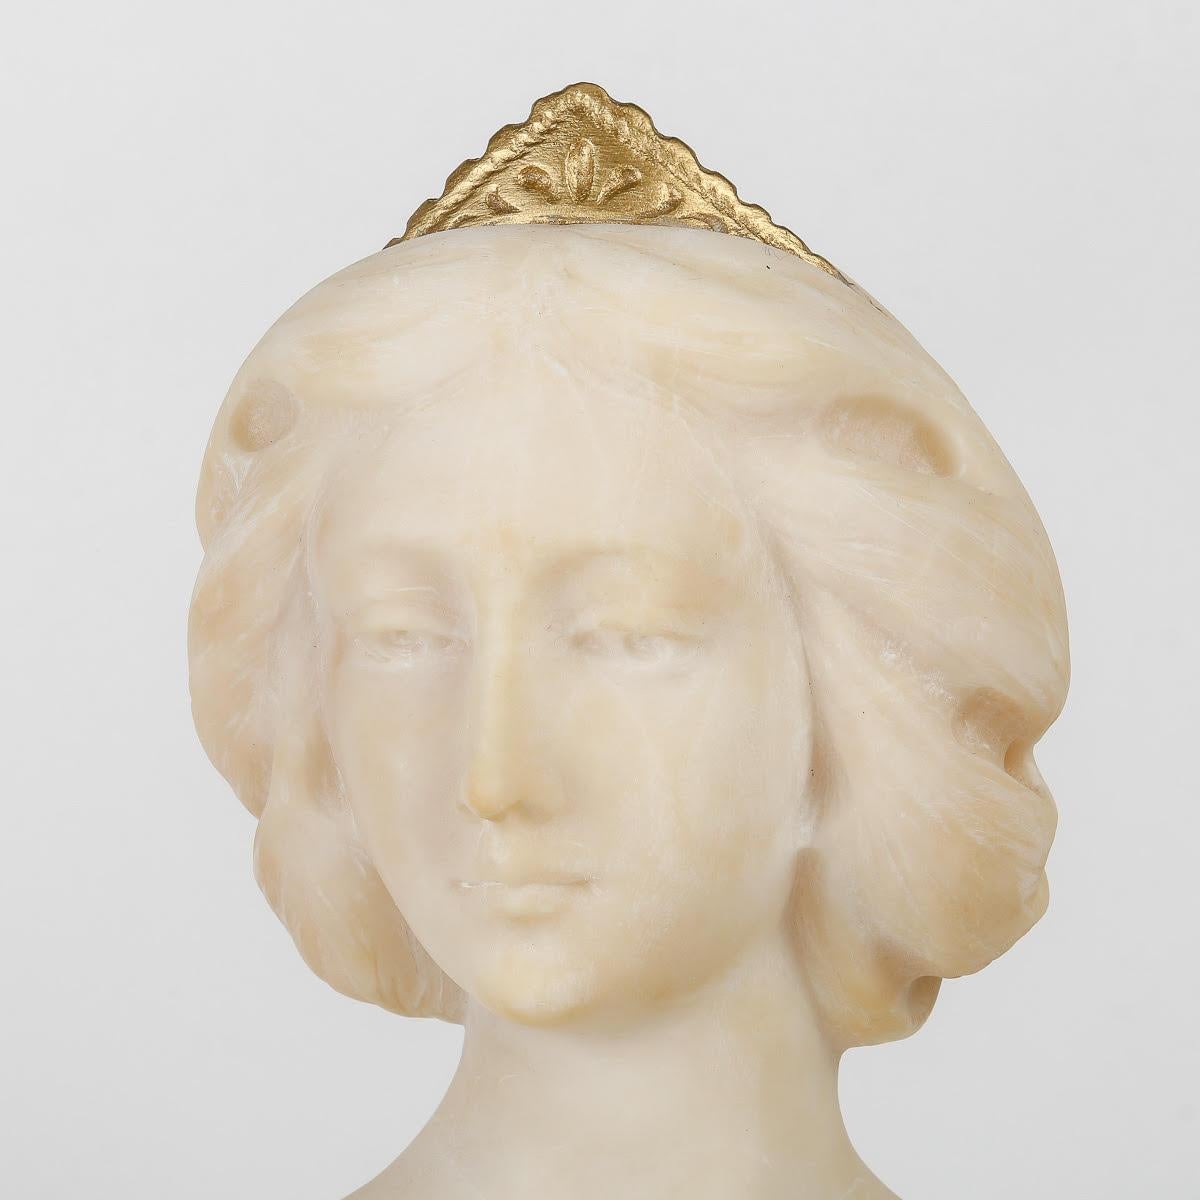 Alabaster sculpture of an elegant lady, 19th century, Napoleon III period.

Sculpture of an elegant woman in alabaster, 19th century, Napoleon III period.

H: 37cm, W: 27cm, D: 16cm